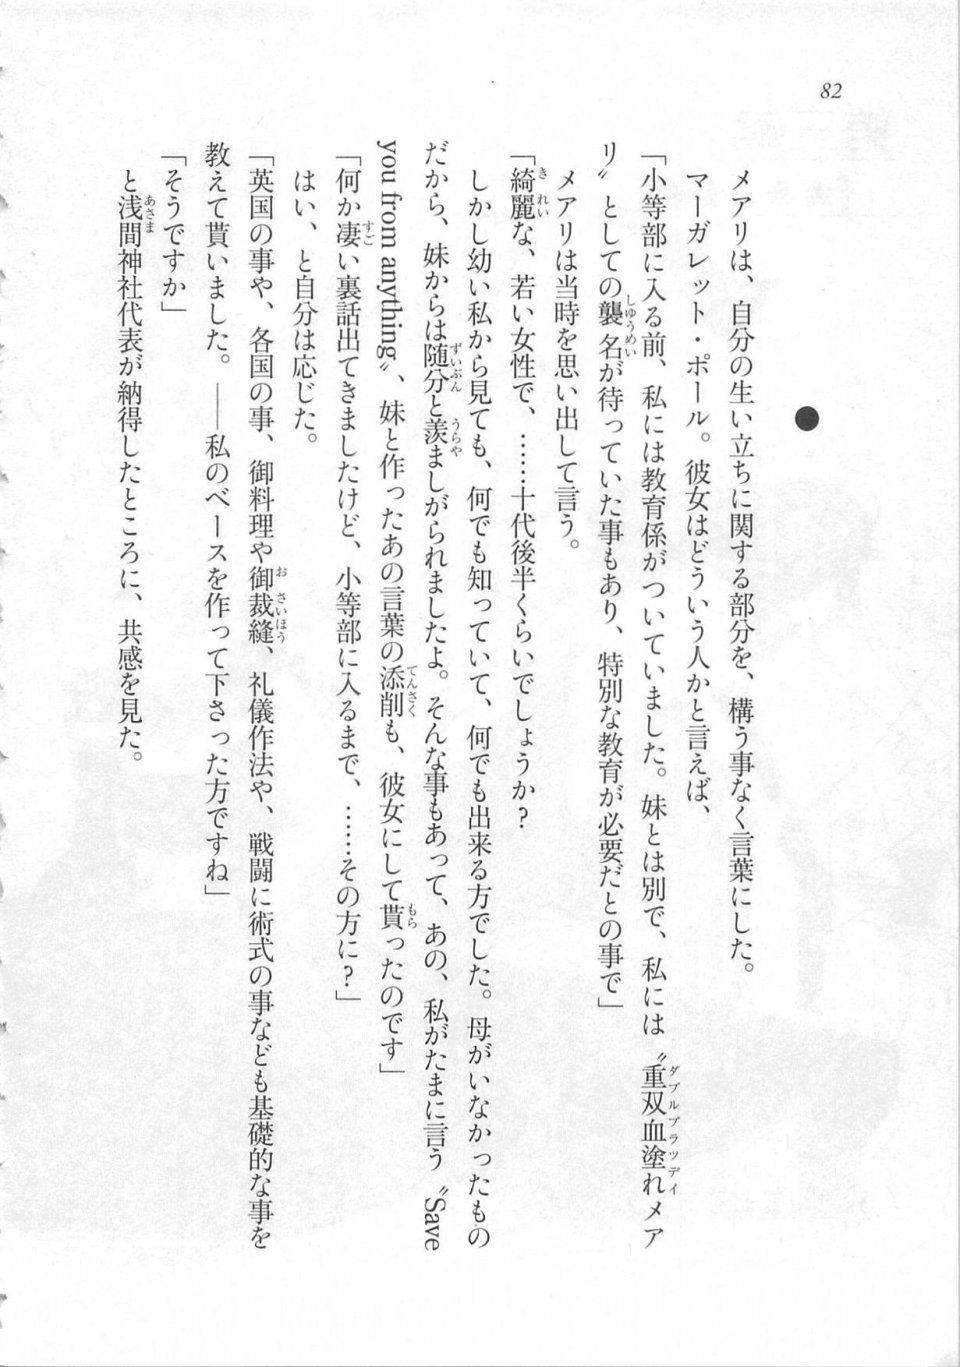 Kyoukai Senjou no Horizon LN Sidestory Vol 3 - Photo #86